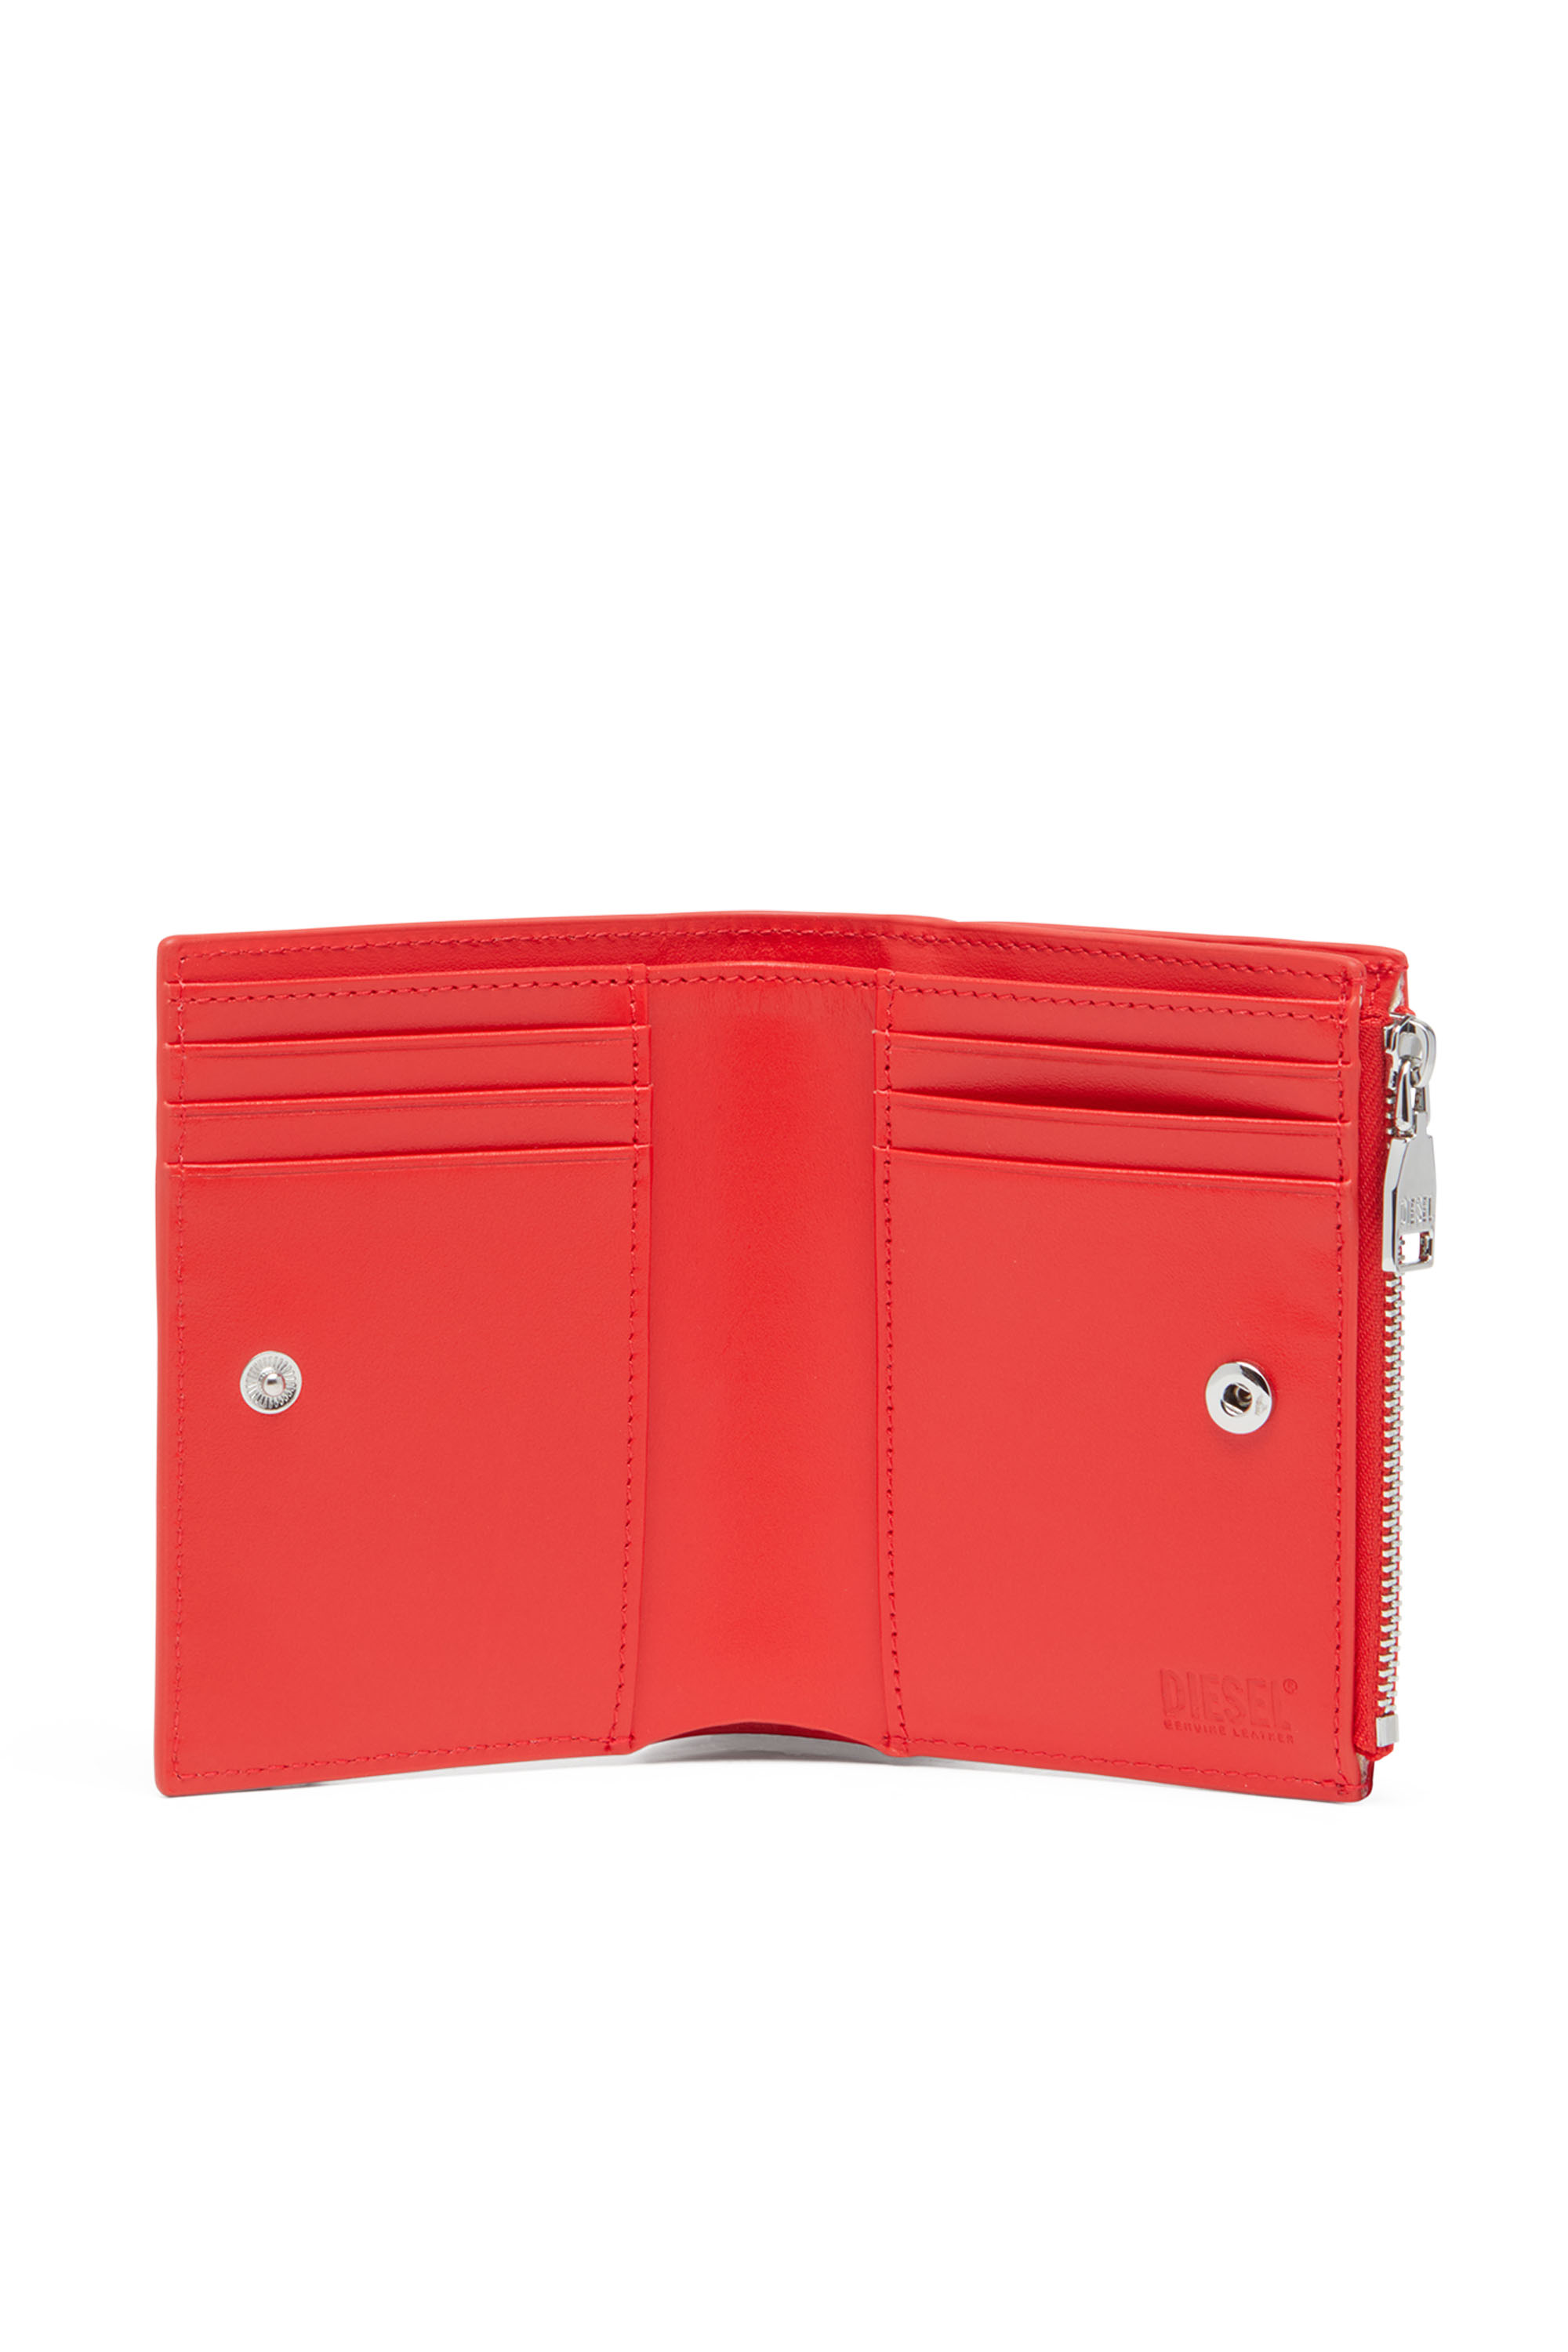 Diesel - PLAY BI-FOLD ZIP II, Damen Kleines Portemonnaie aus glänzendem Leder in Rot - Image 3